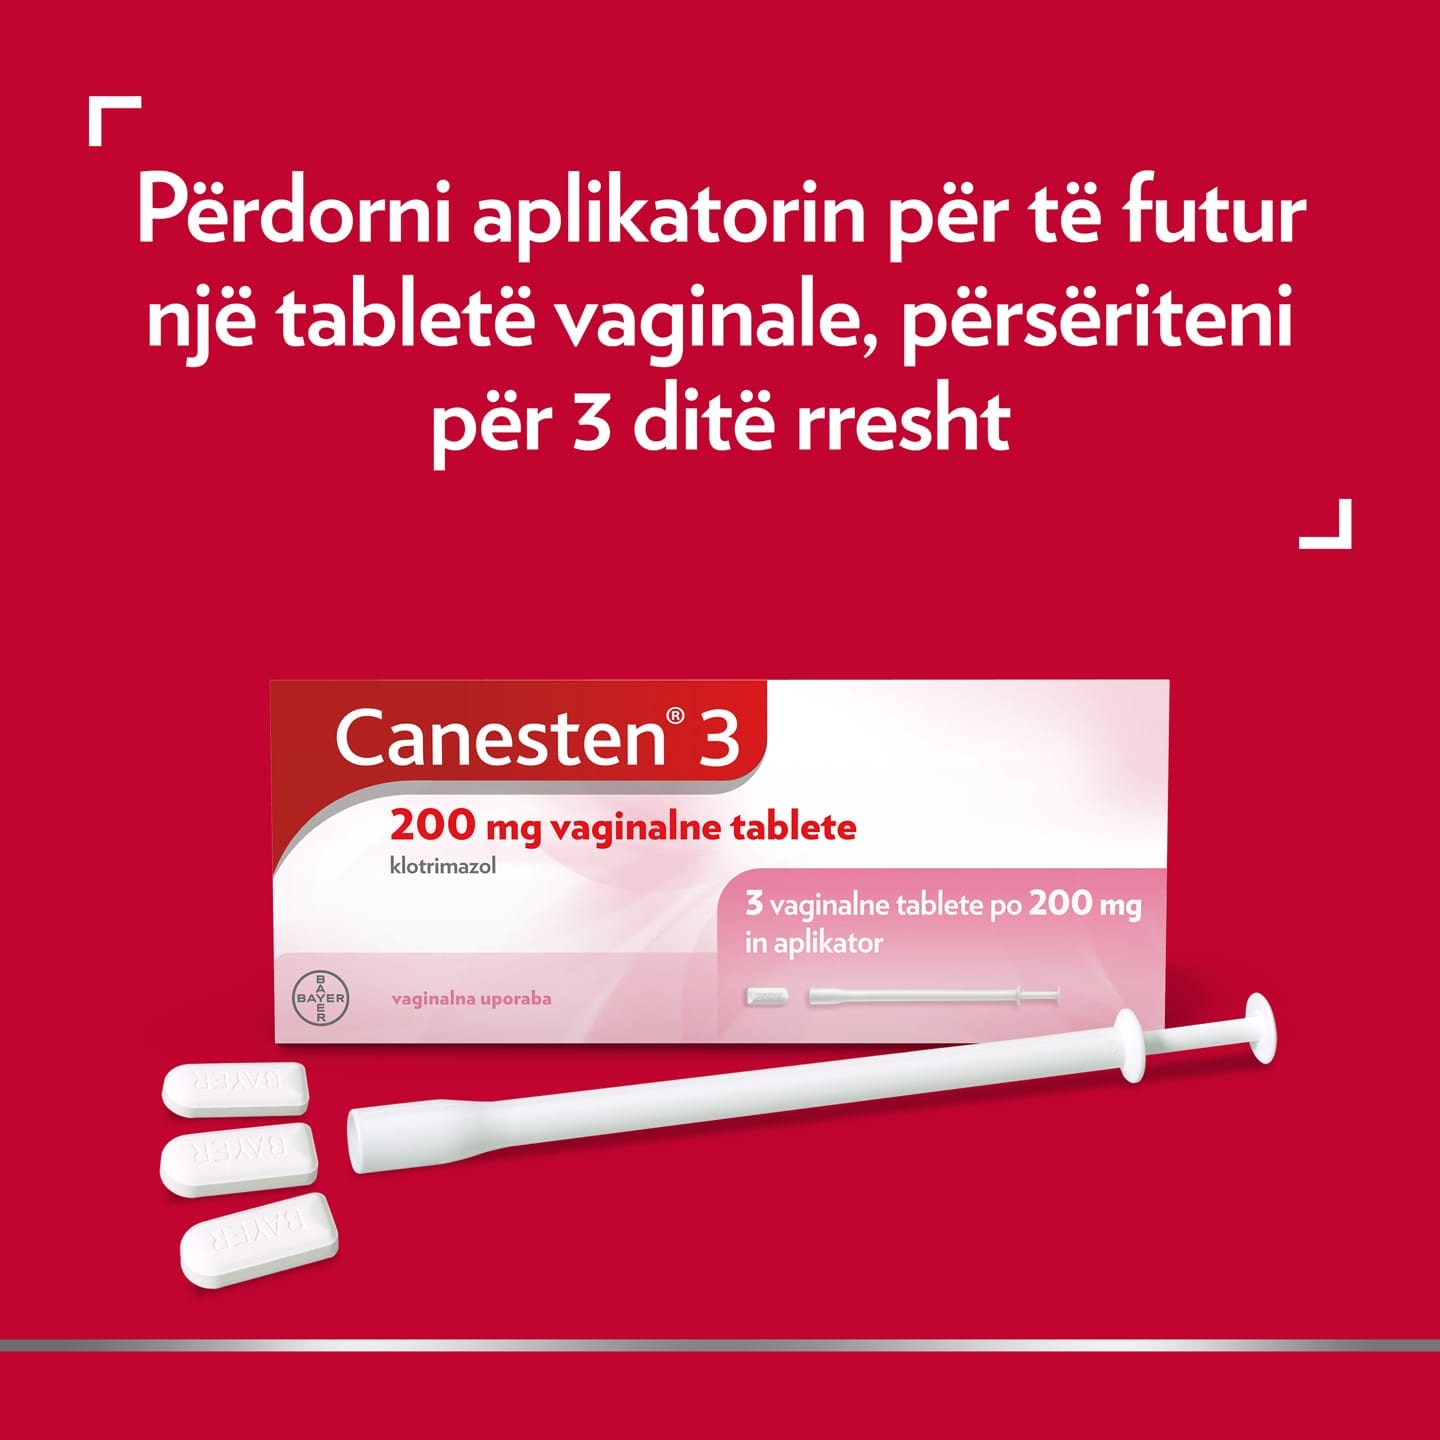 Canesten® 3 200 mg tableta vaginale, me titullin sipër: Përdorni aplikatorin për të futur një tabletë vaginale, përsëritni për 3 ditë me radhë